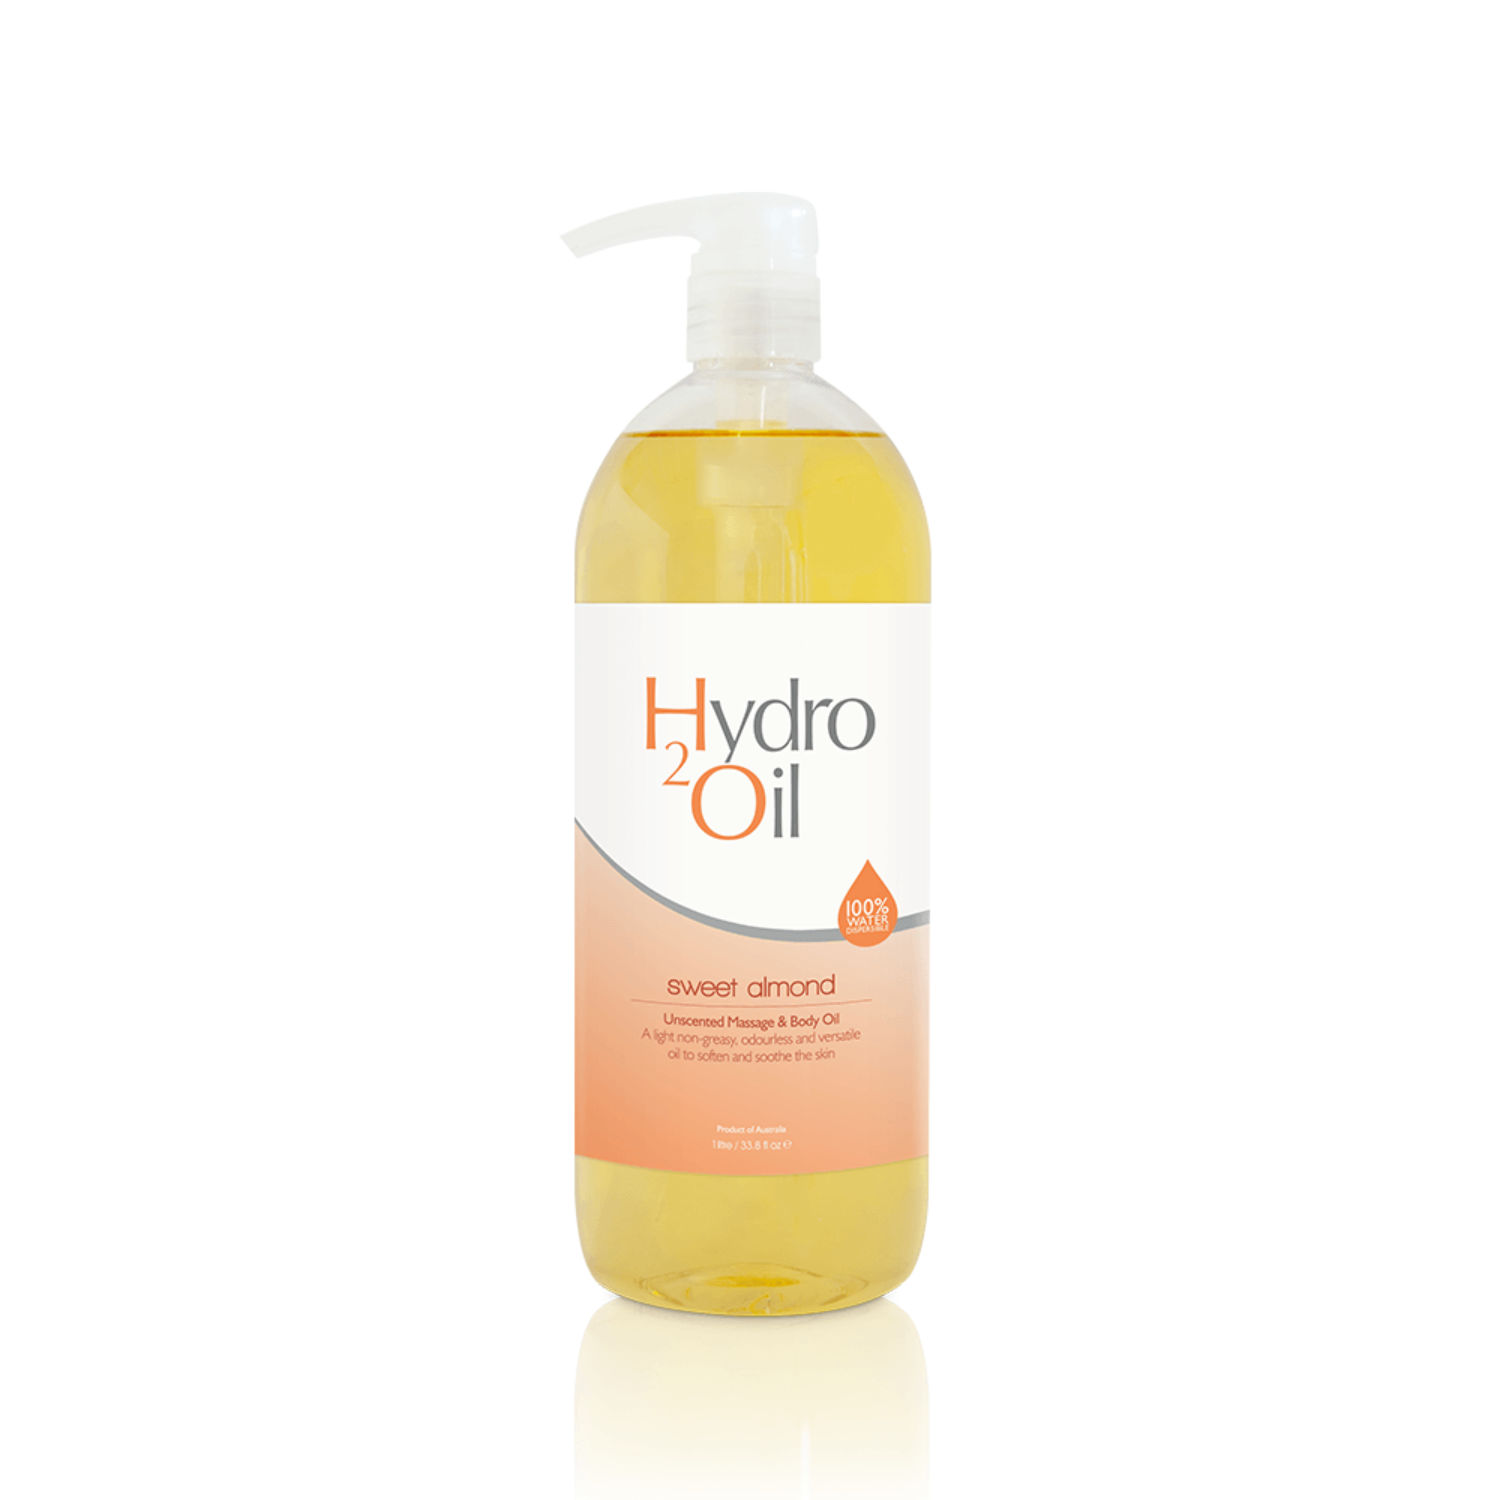 HYDRO OIL - SWEET ALMOND